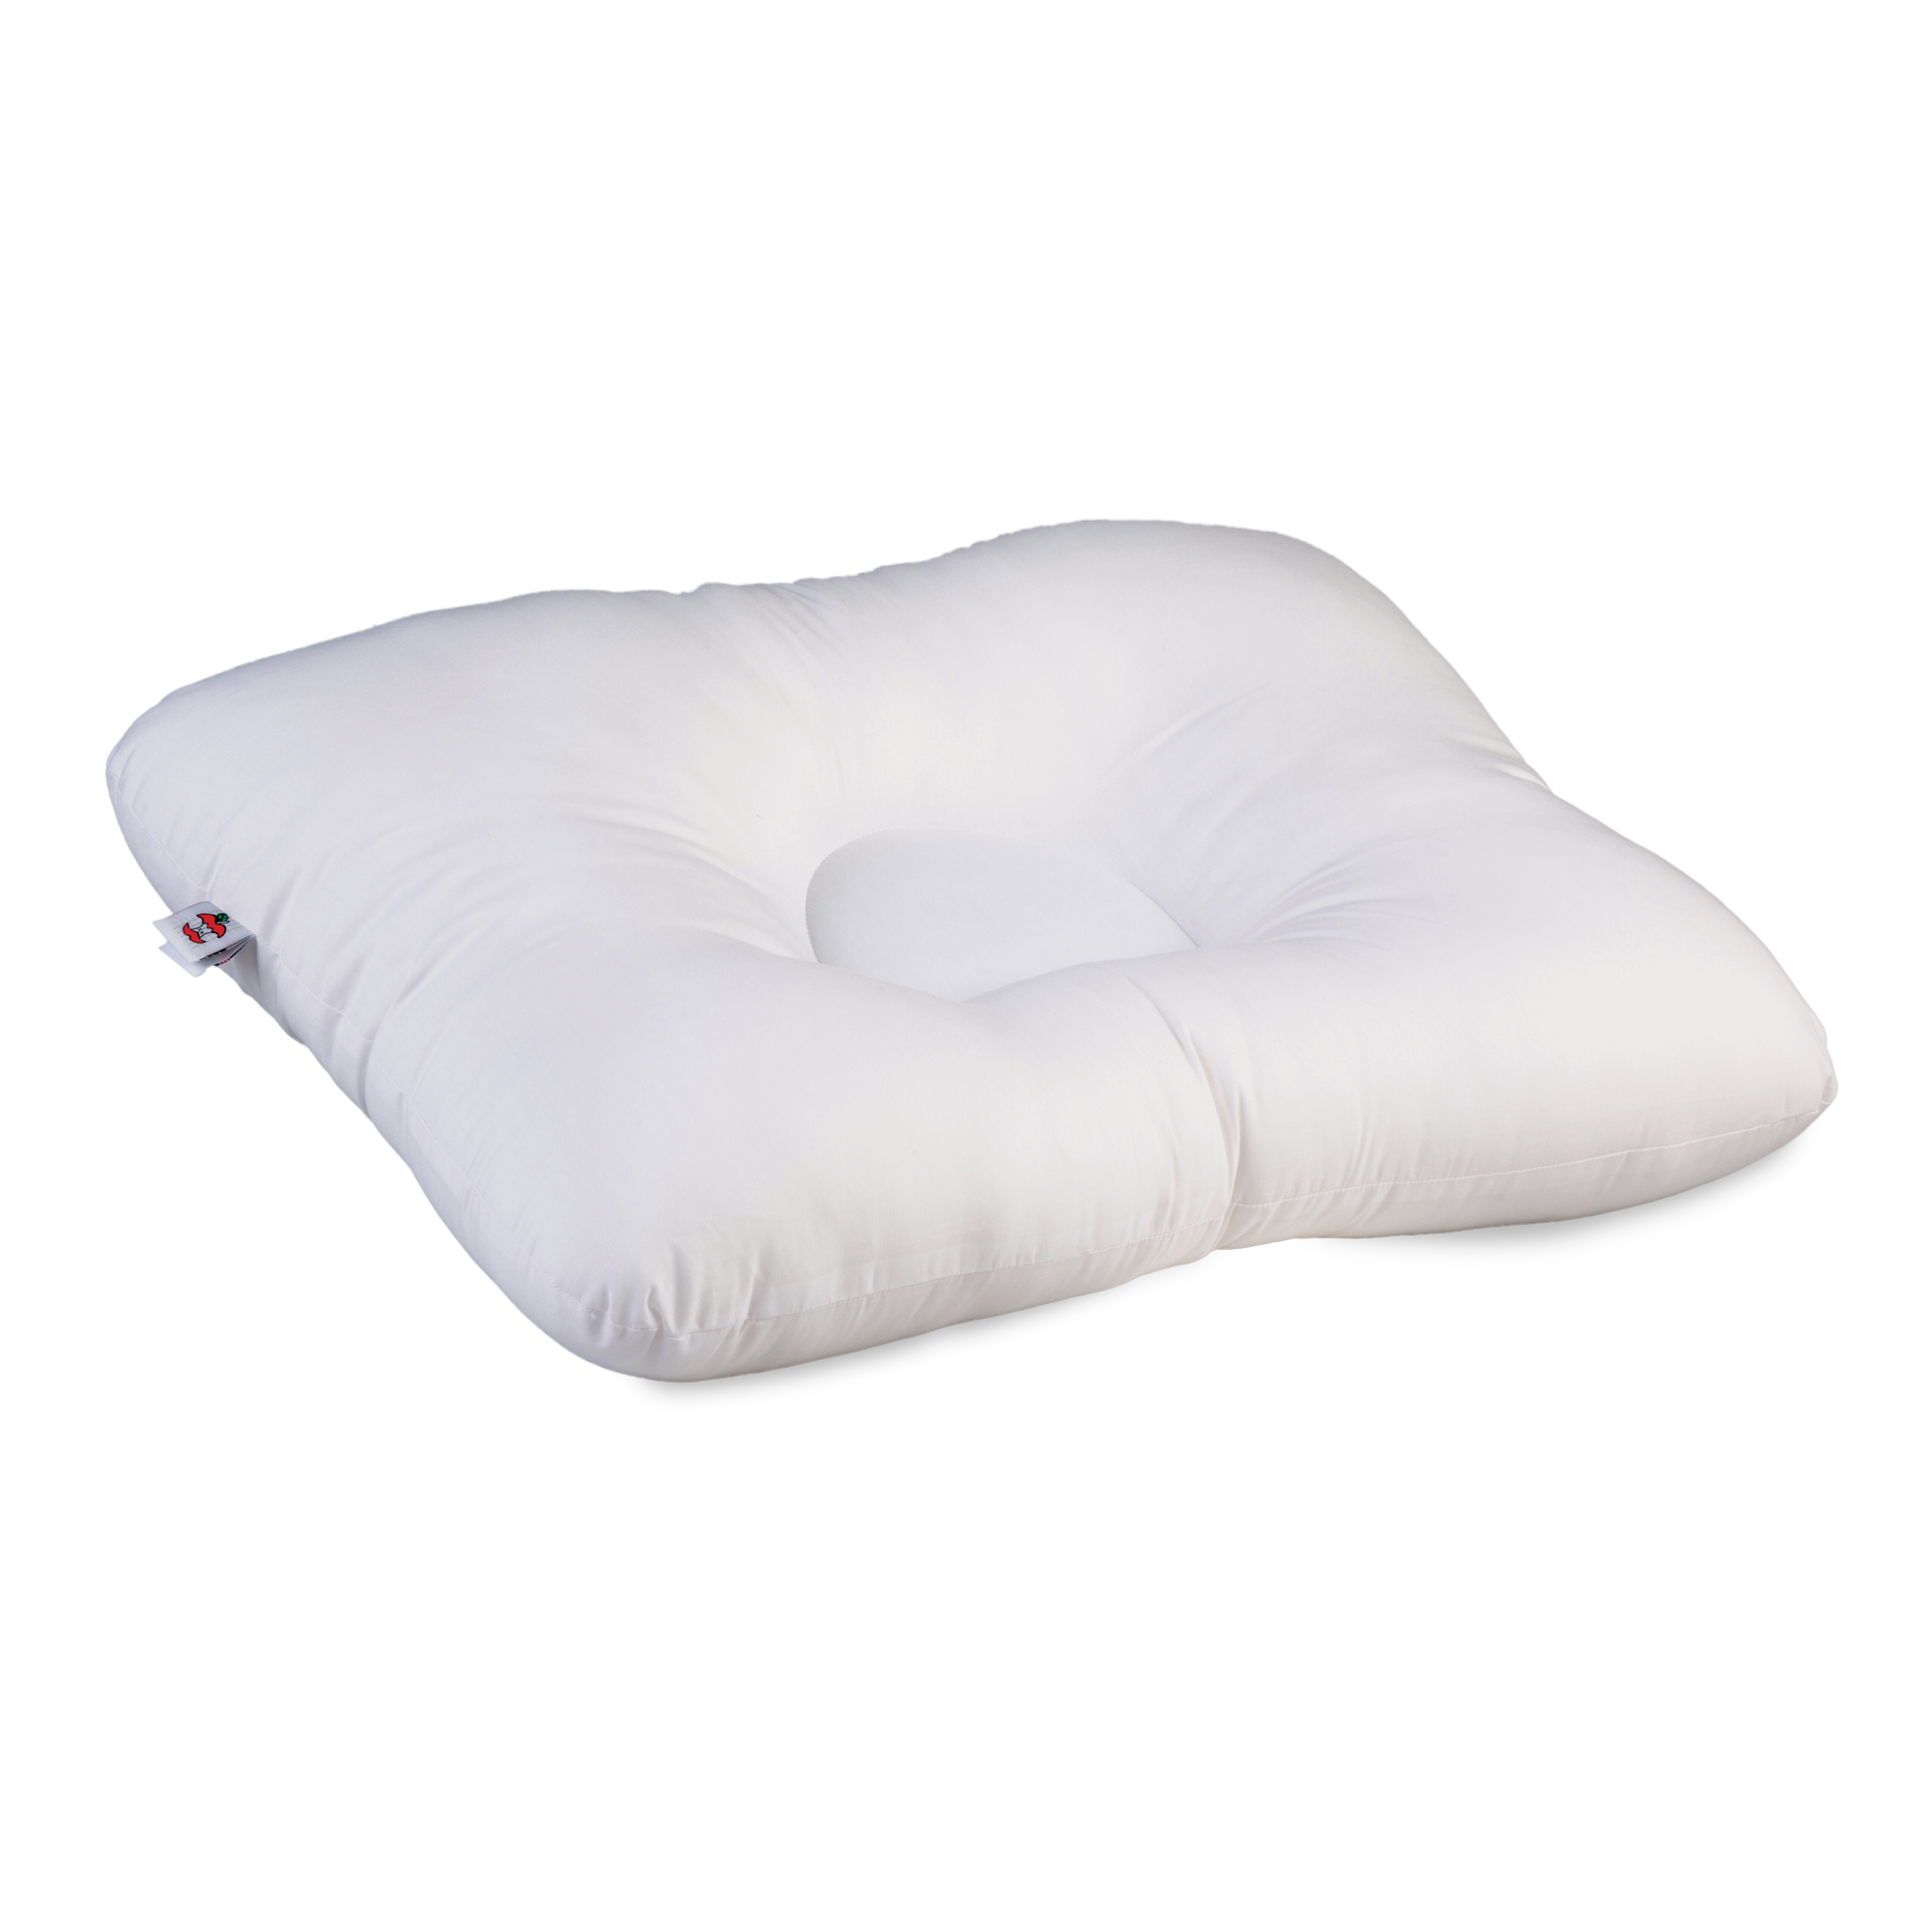 D-Core Cervical Support Pillow